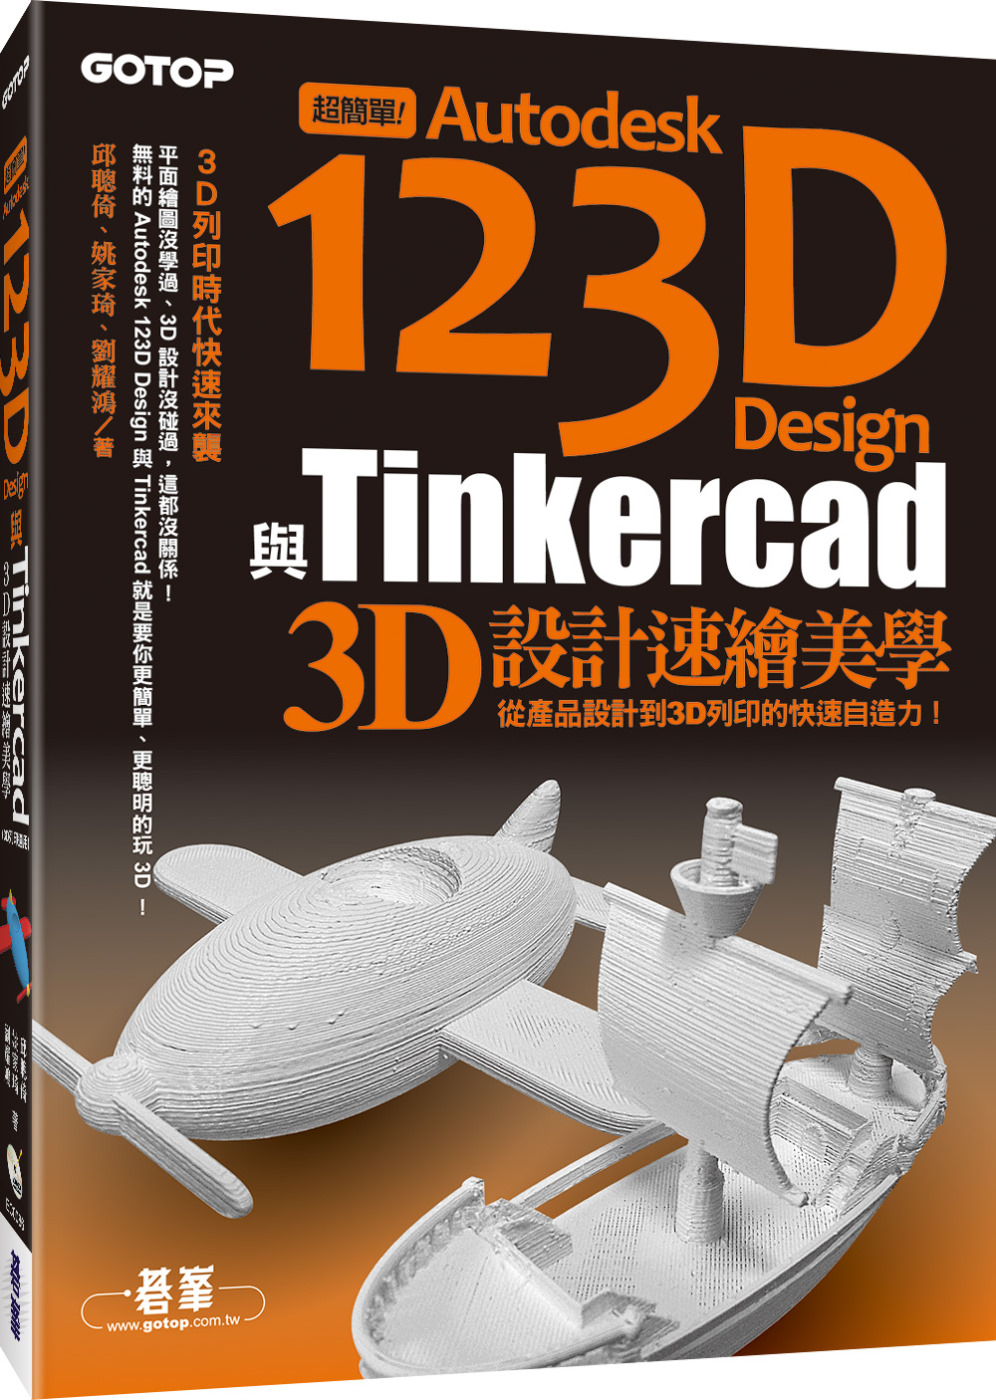 超簡單！Autodesk 123D Design與Tinkercad 3D設計速繪美學(從產品設計到3D列印的快速自造力) (附150分鐘影音教學/範例/工具)